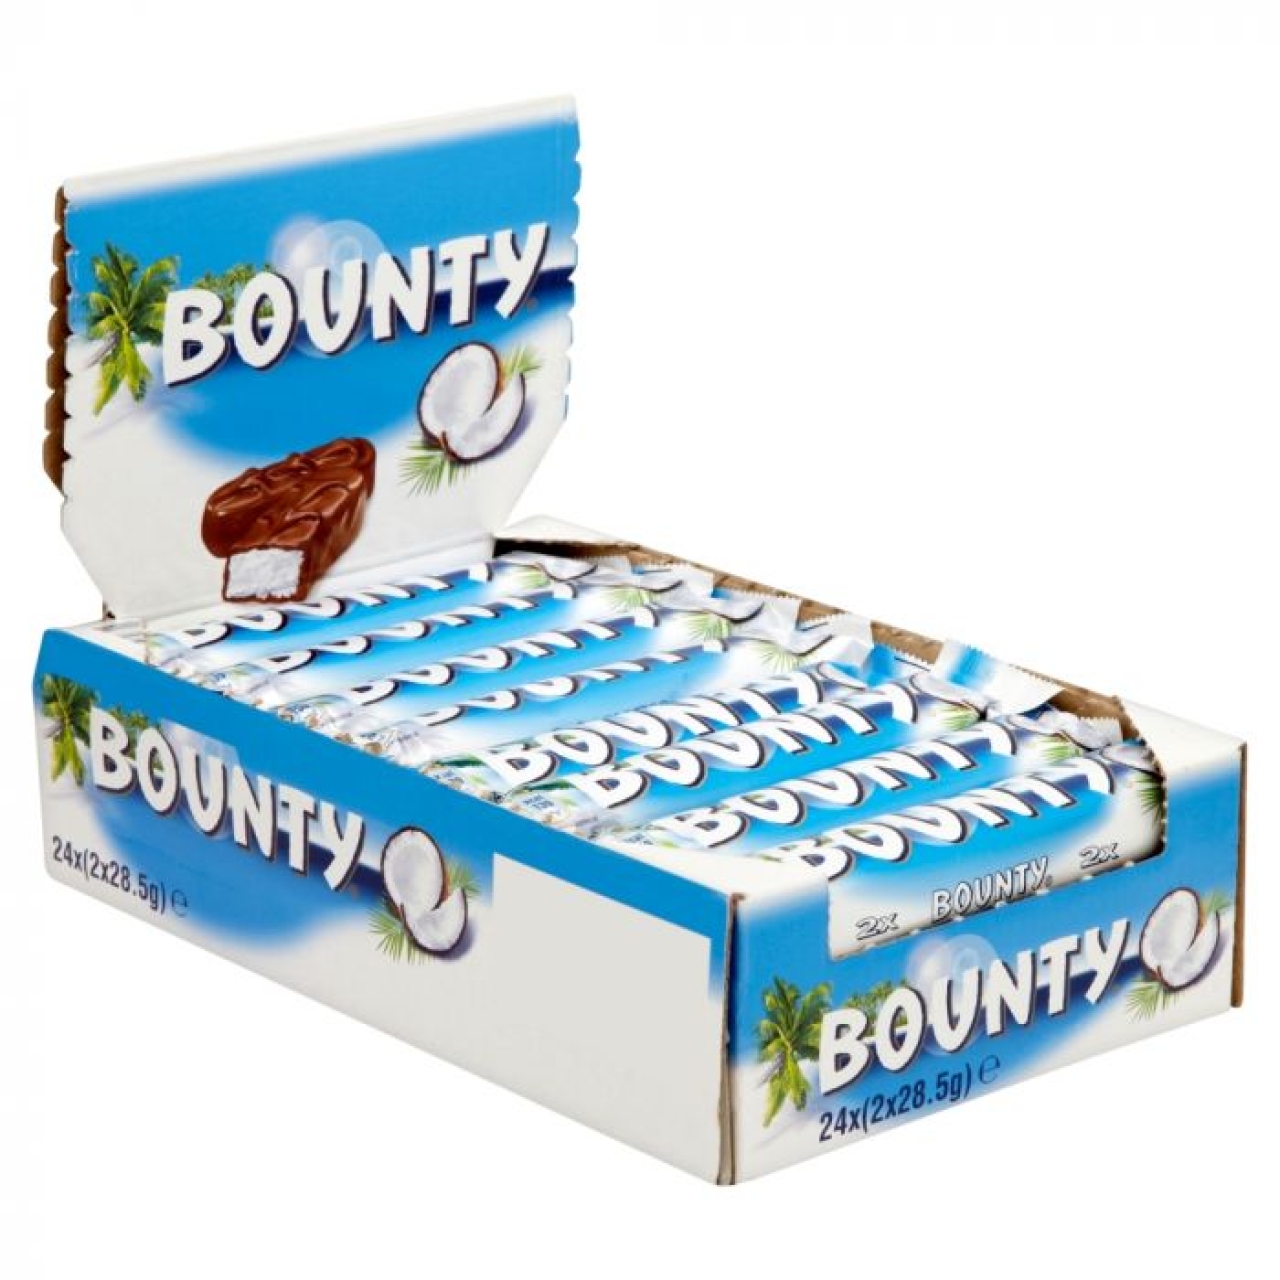 شکلات بونتی با طعم نارگیل بسته 24 عددی